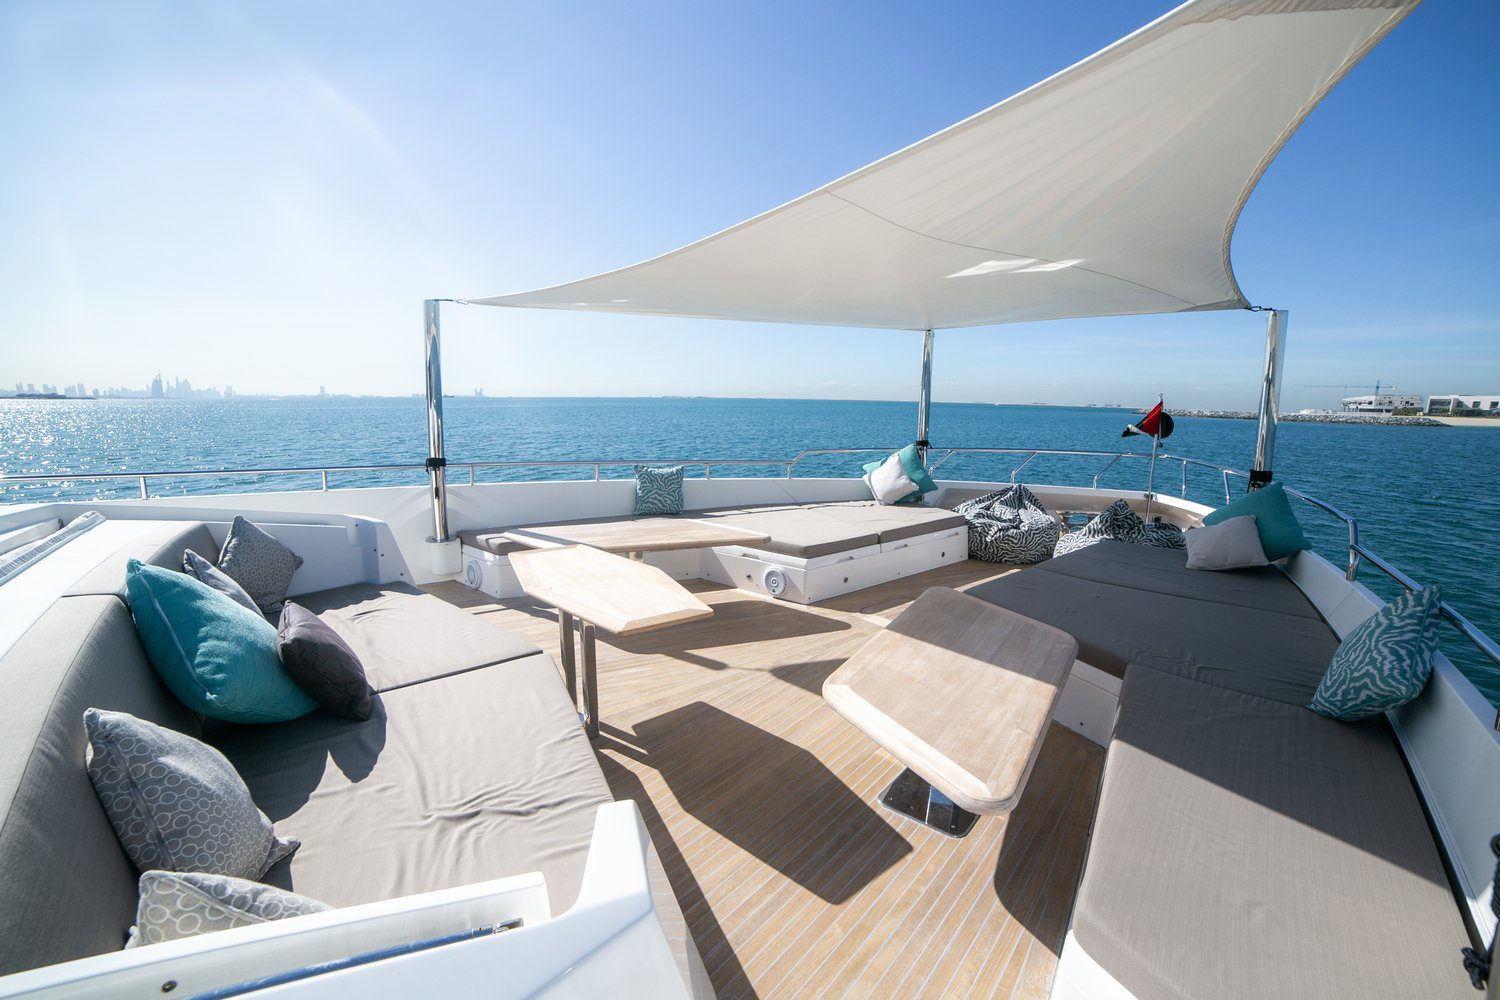 Dolce Vita 105 ft. yacht booking Dubai